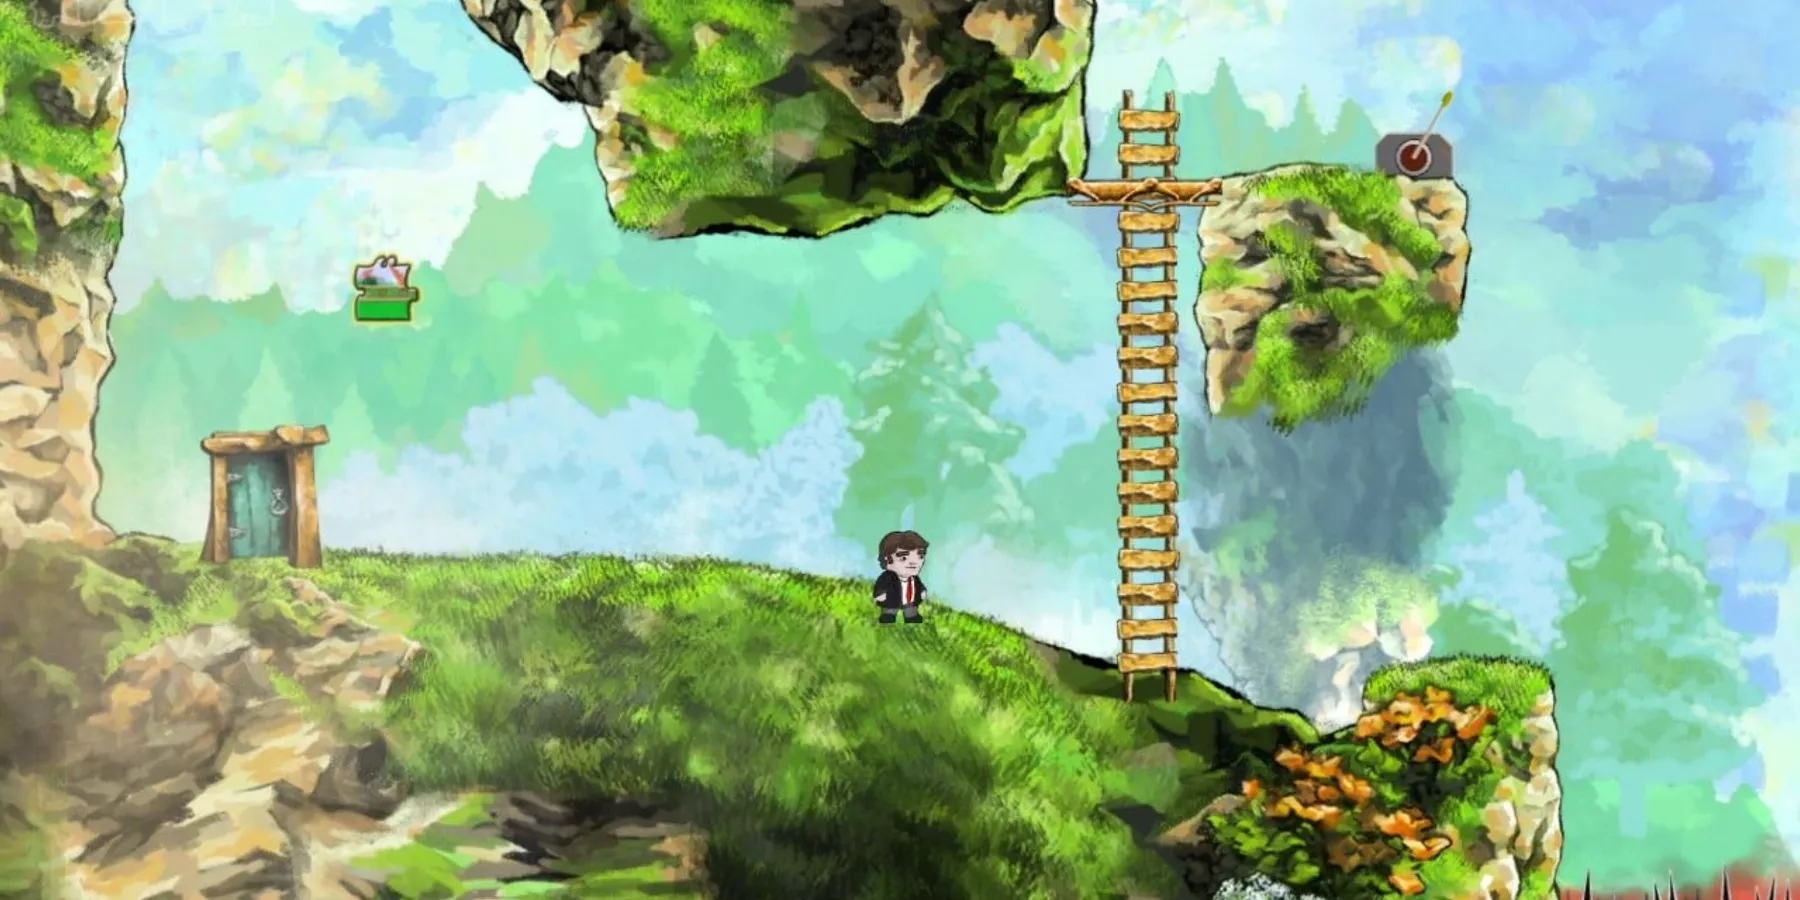 Un personaje de píxeles junto a una escalera sobre hierba